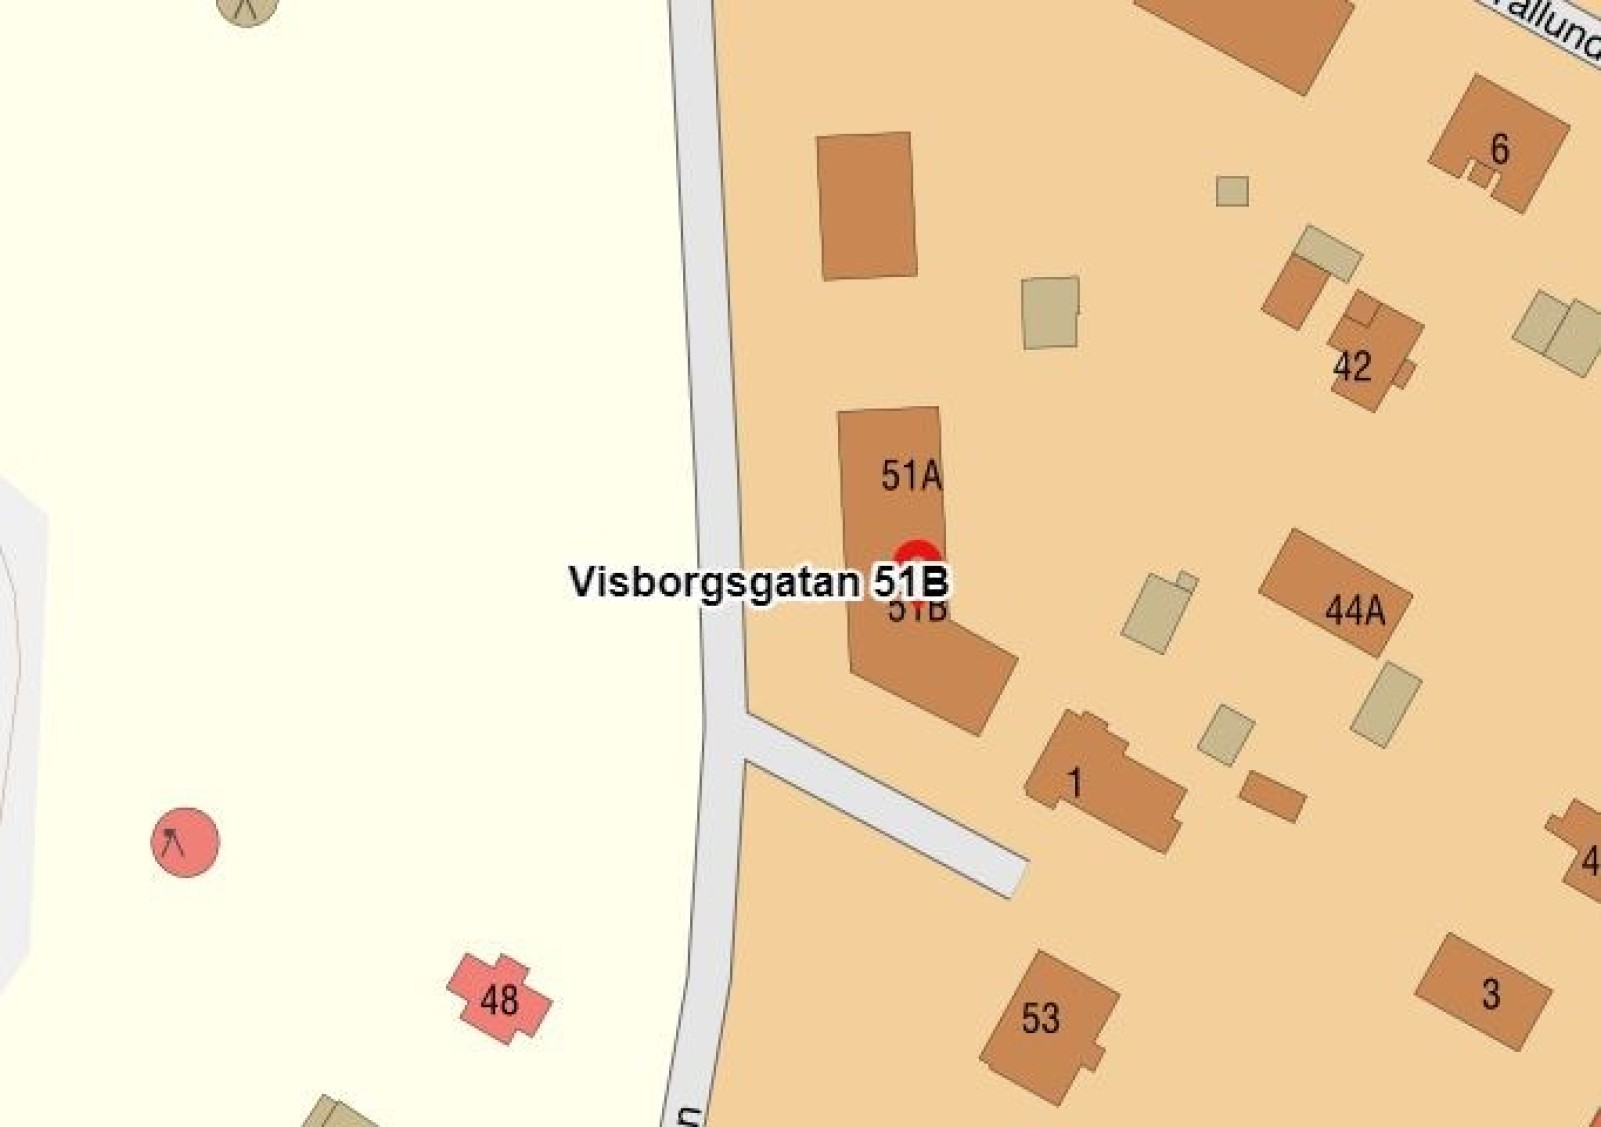  Visborgsgatan 51A